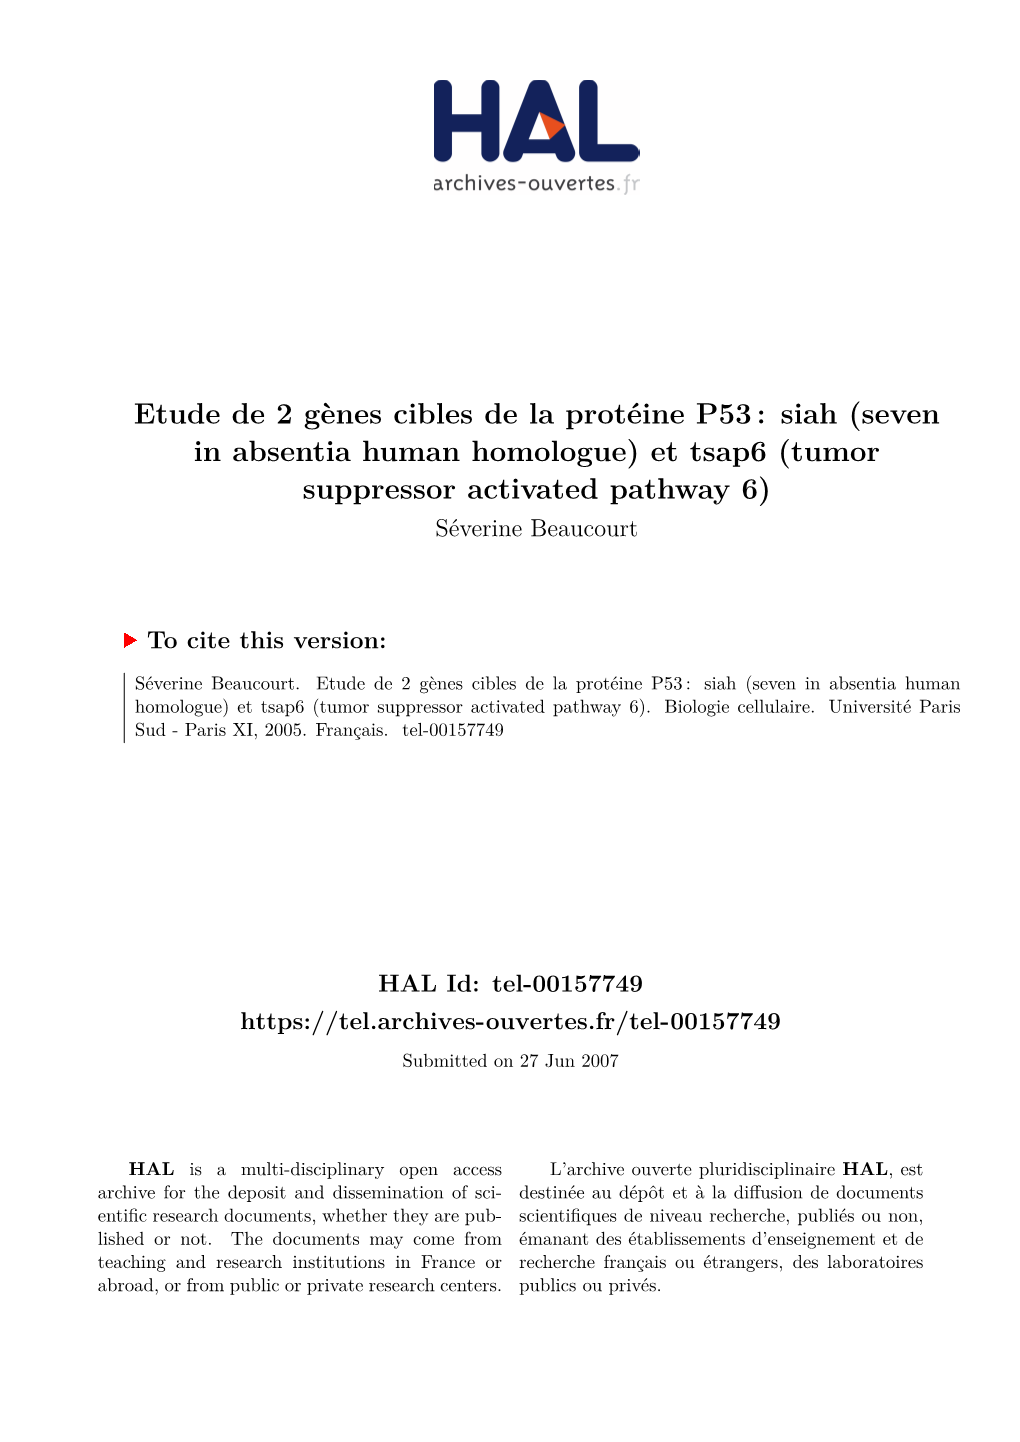 Etude De 2 Gènes Cibles De La Protéine P53 : Siah (Seven in Absentia Human Homologue) Et Tsap6 (Tumor Suppressor Activated Pathway 6) Séverine Beaucourt